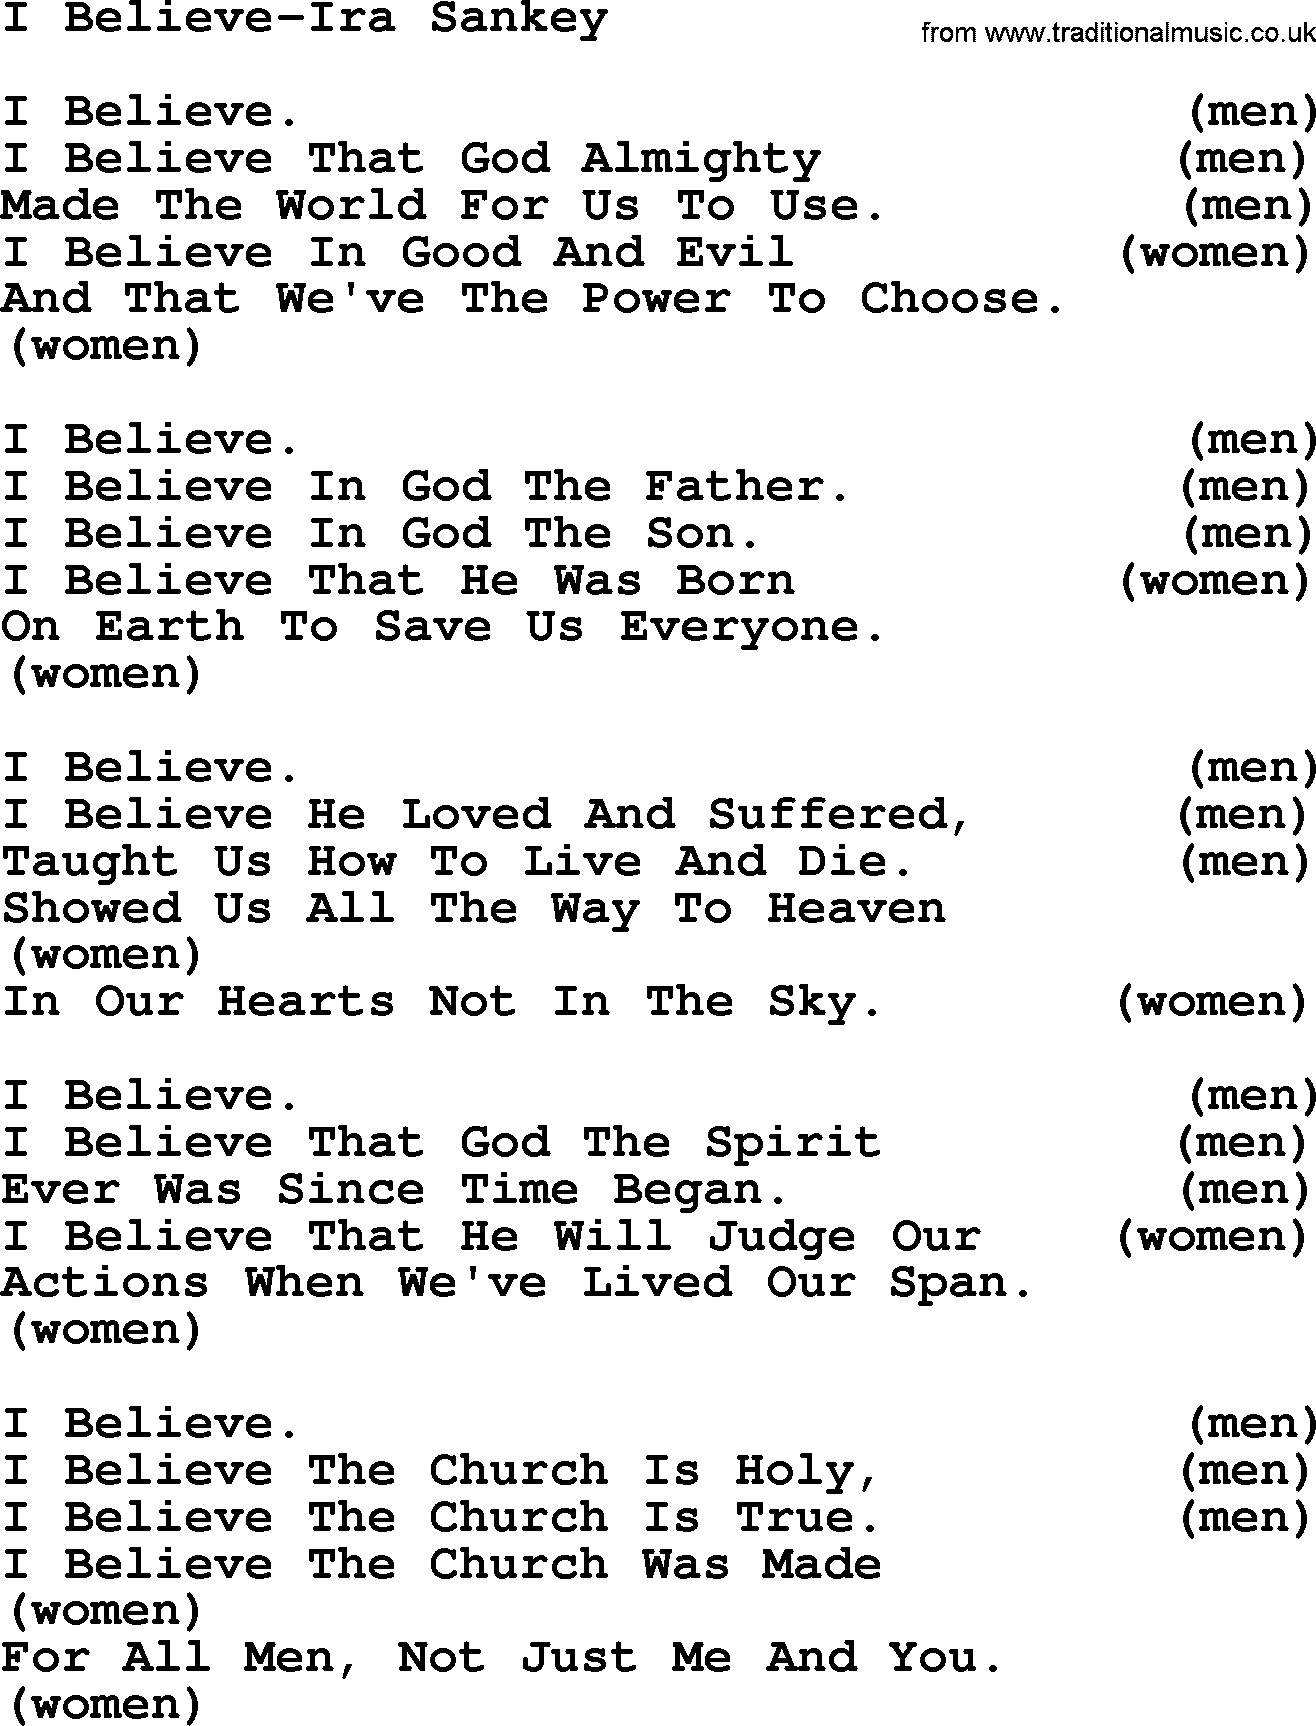 Ira Sankey hymn: I Believe-Ira Sankey, lyrics